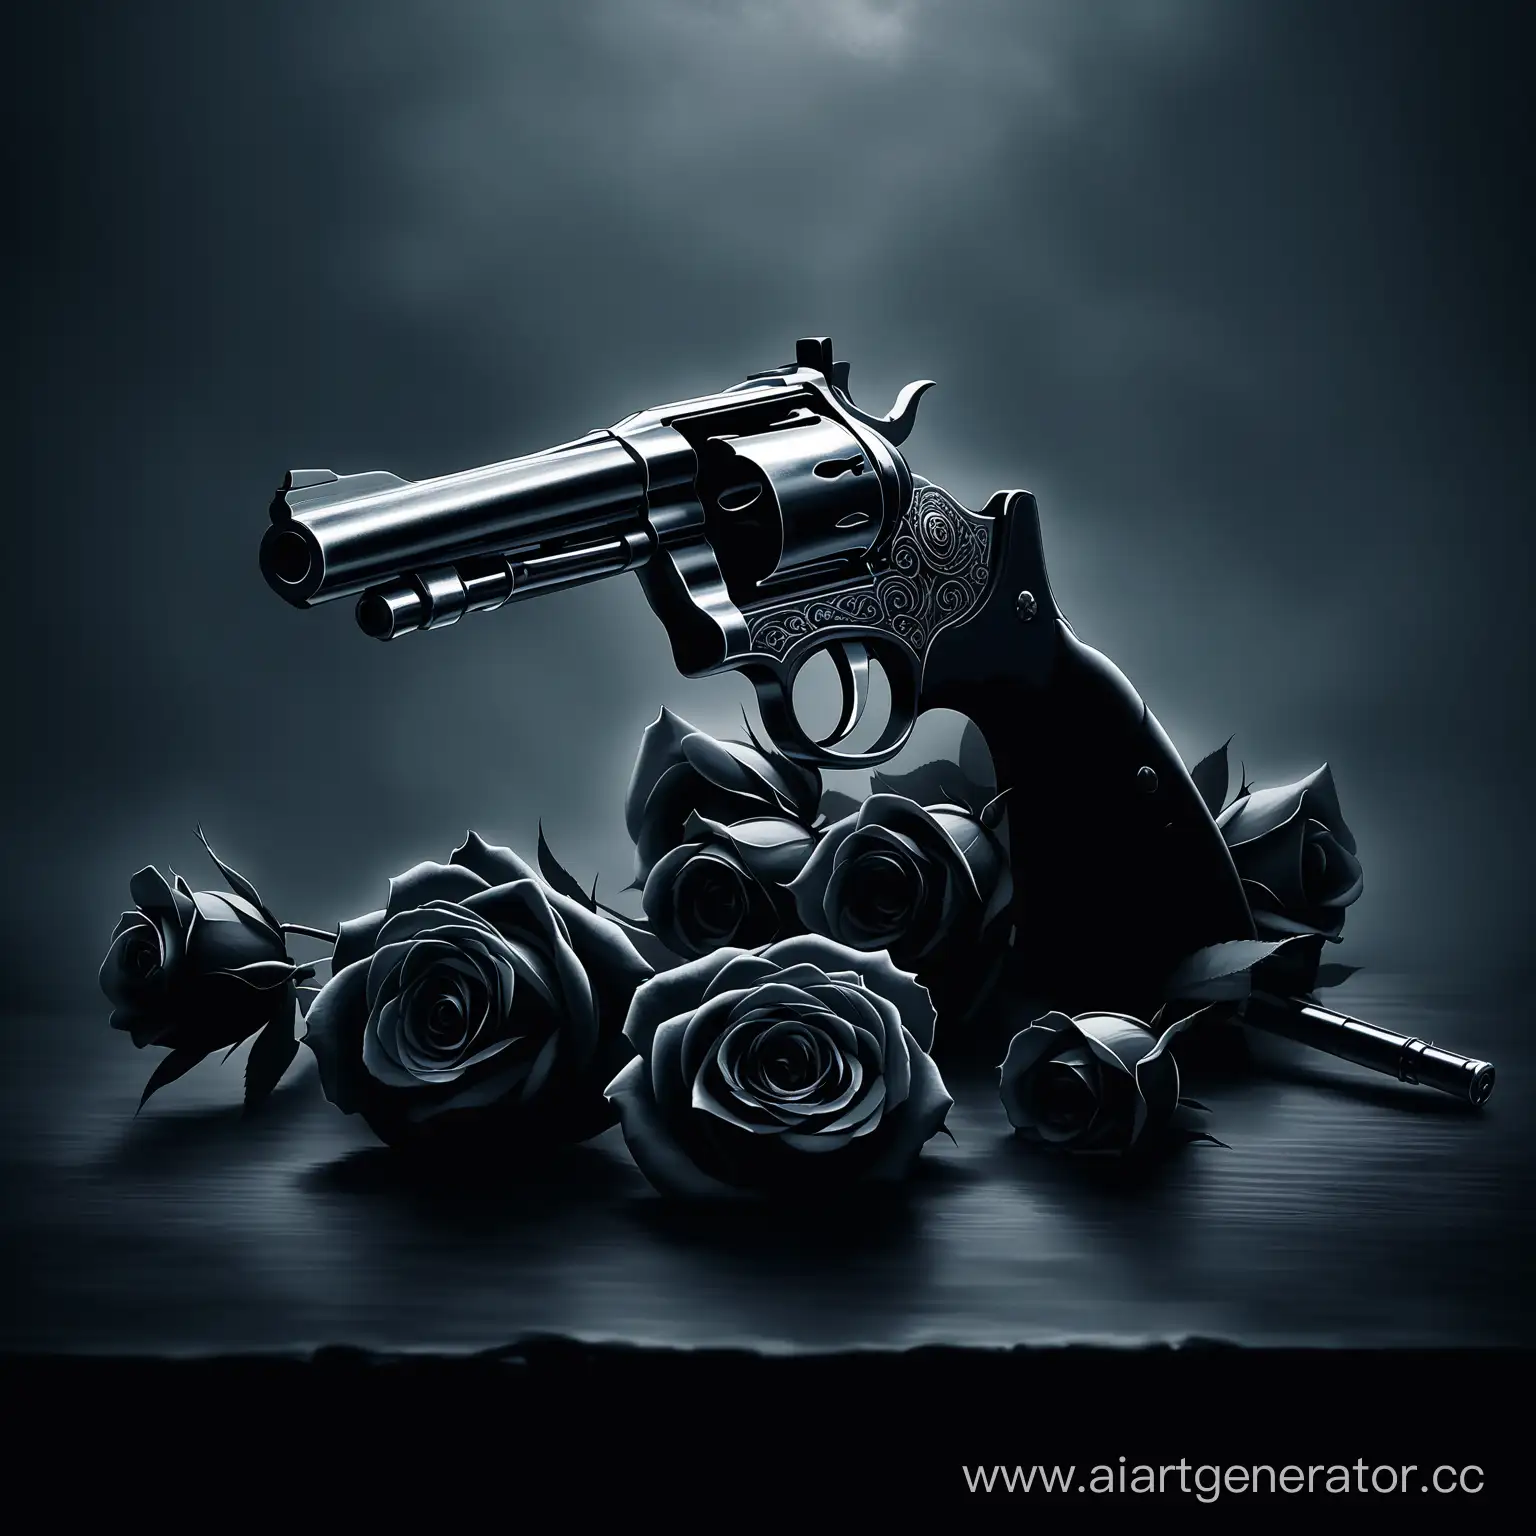 Розы и револьвер, голубые и черные тона, мрачная атмосфера